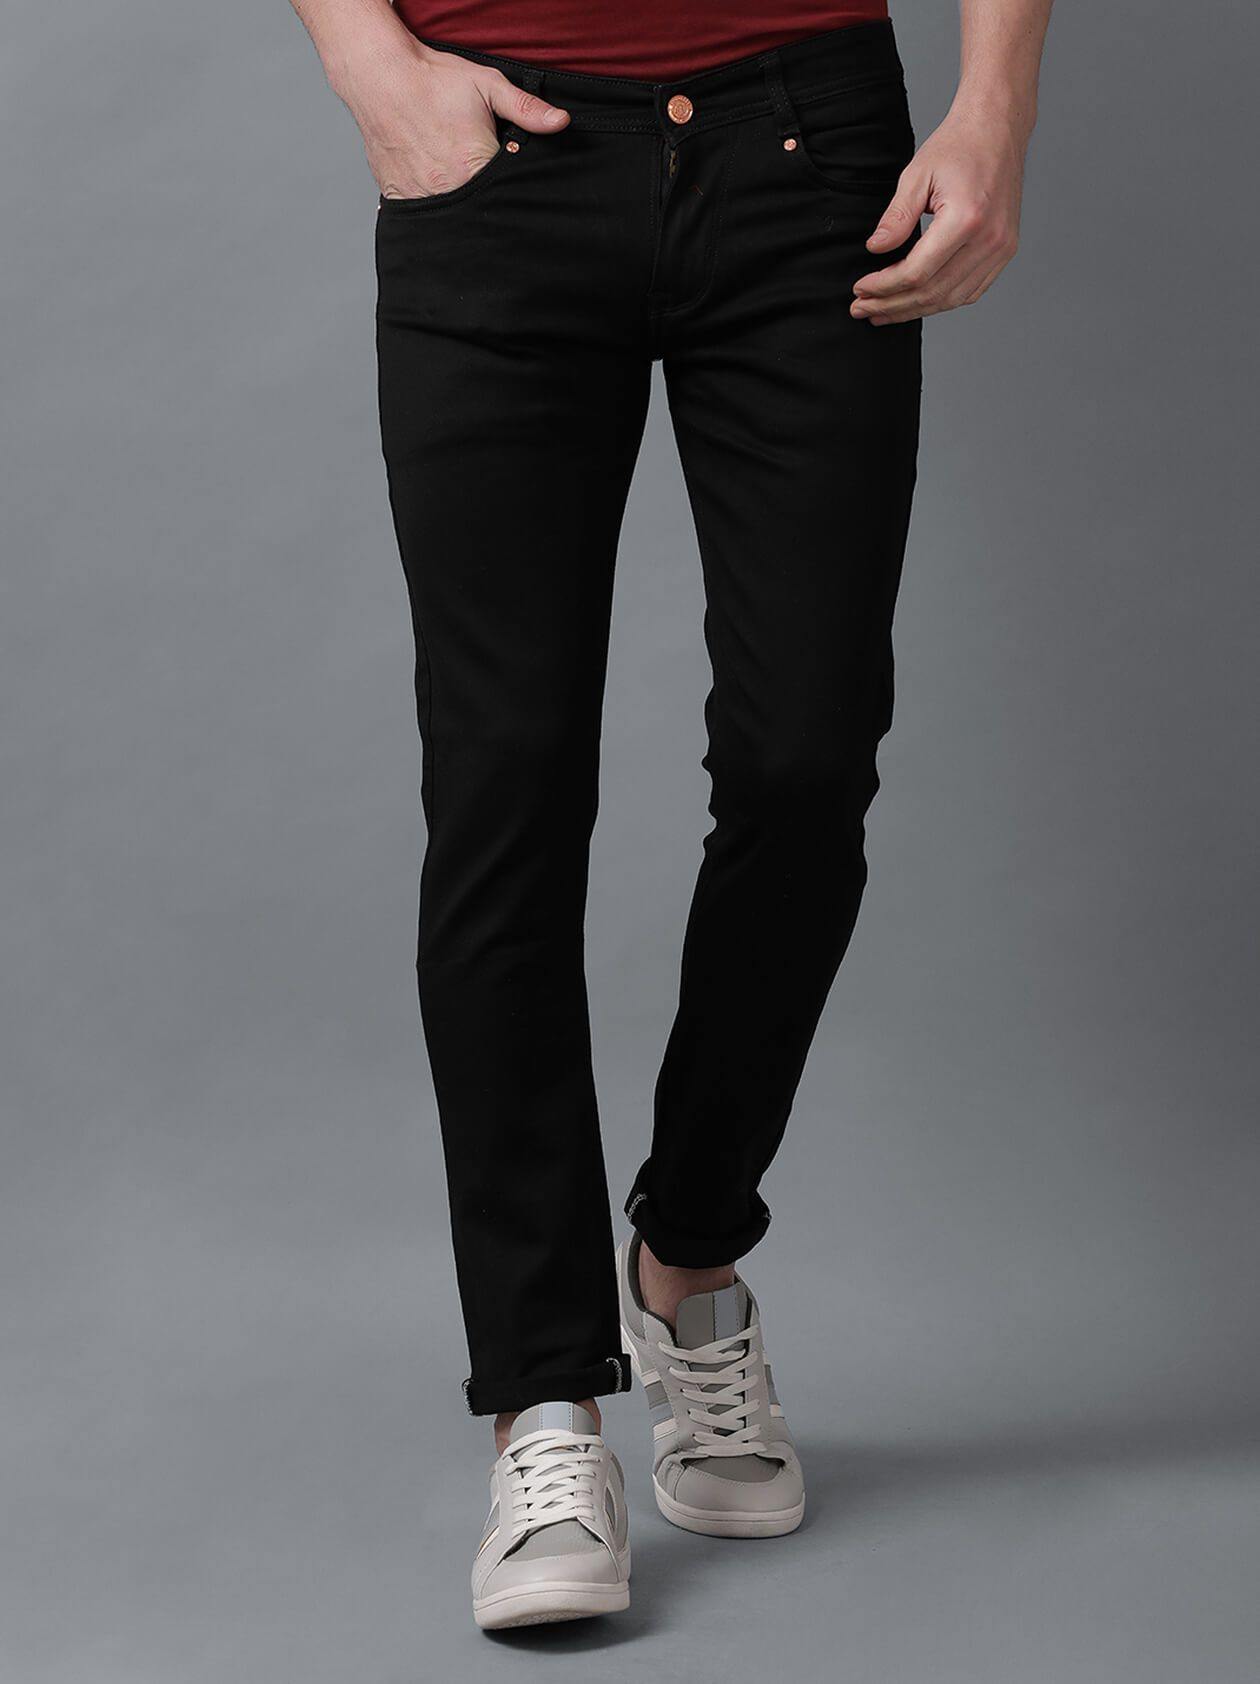 Black Denim Slim Fit Jeans for Men – G O O S E B E R Y®